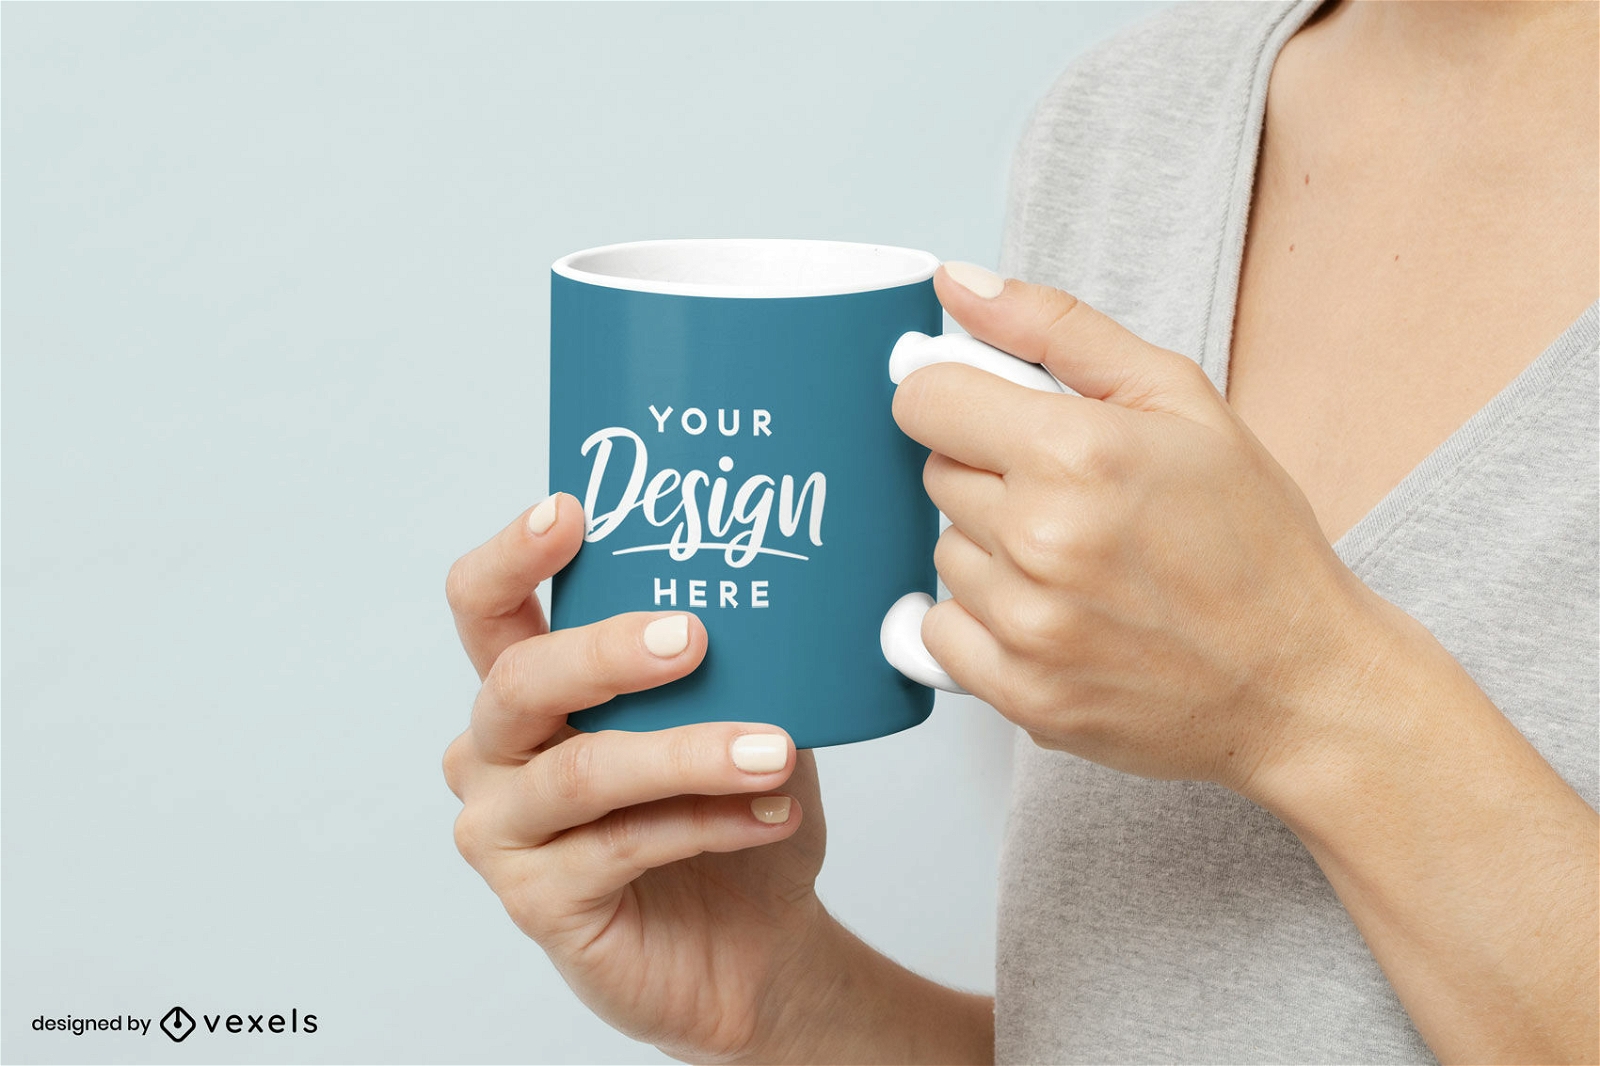 Hands holding a mug mockup design